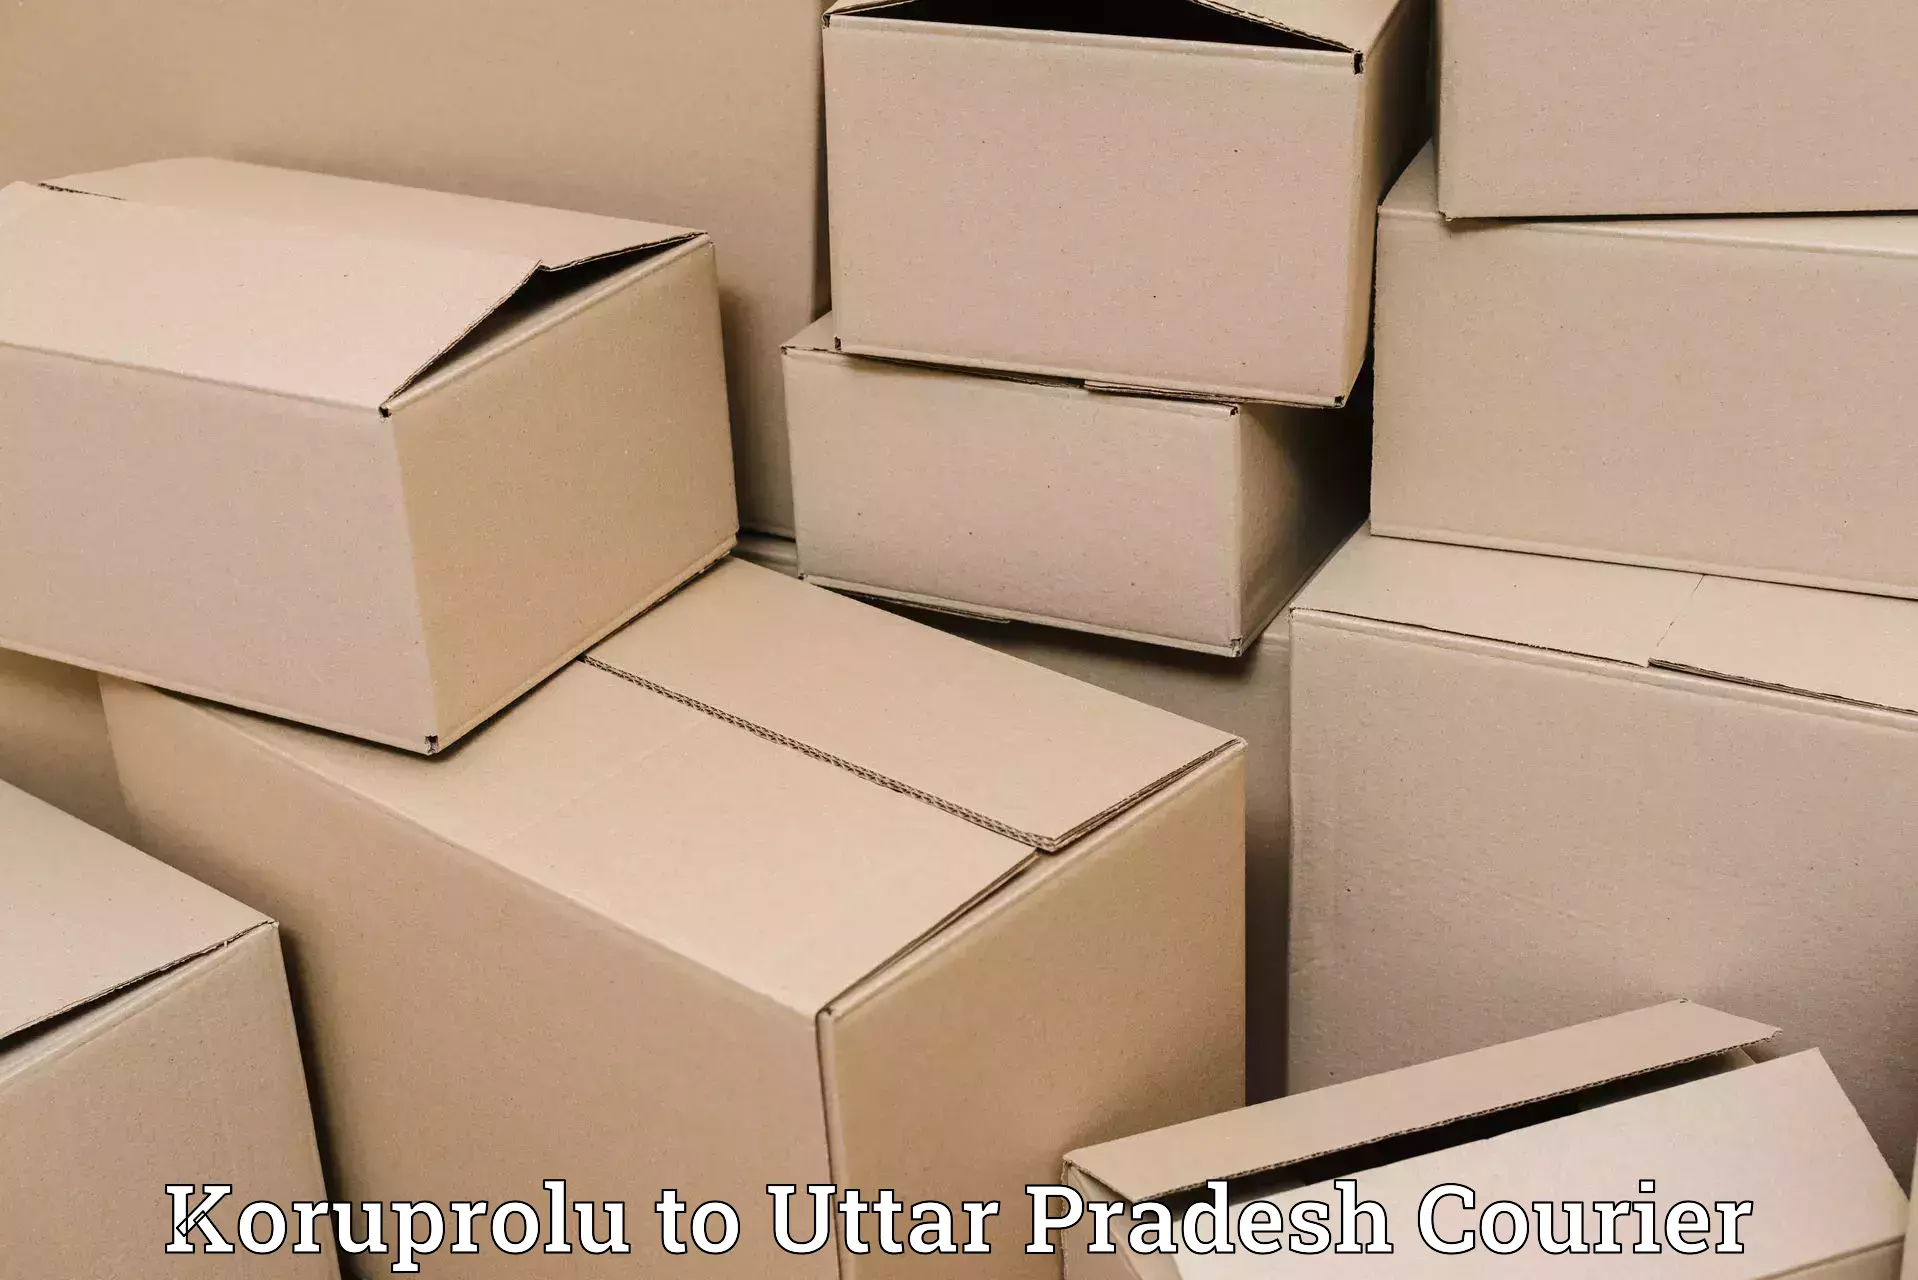 Custom courier solutions Koruprolu to Uttar Pradesh